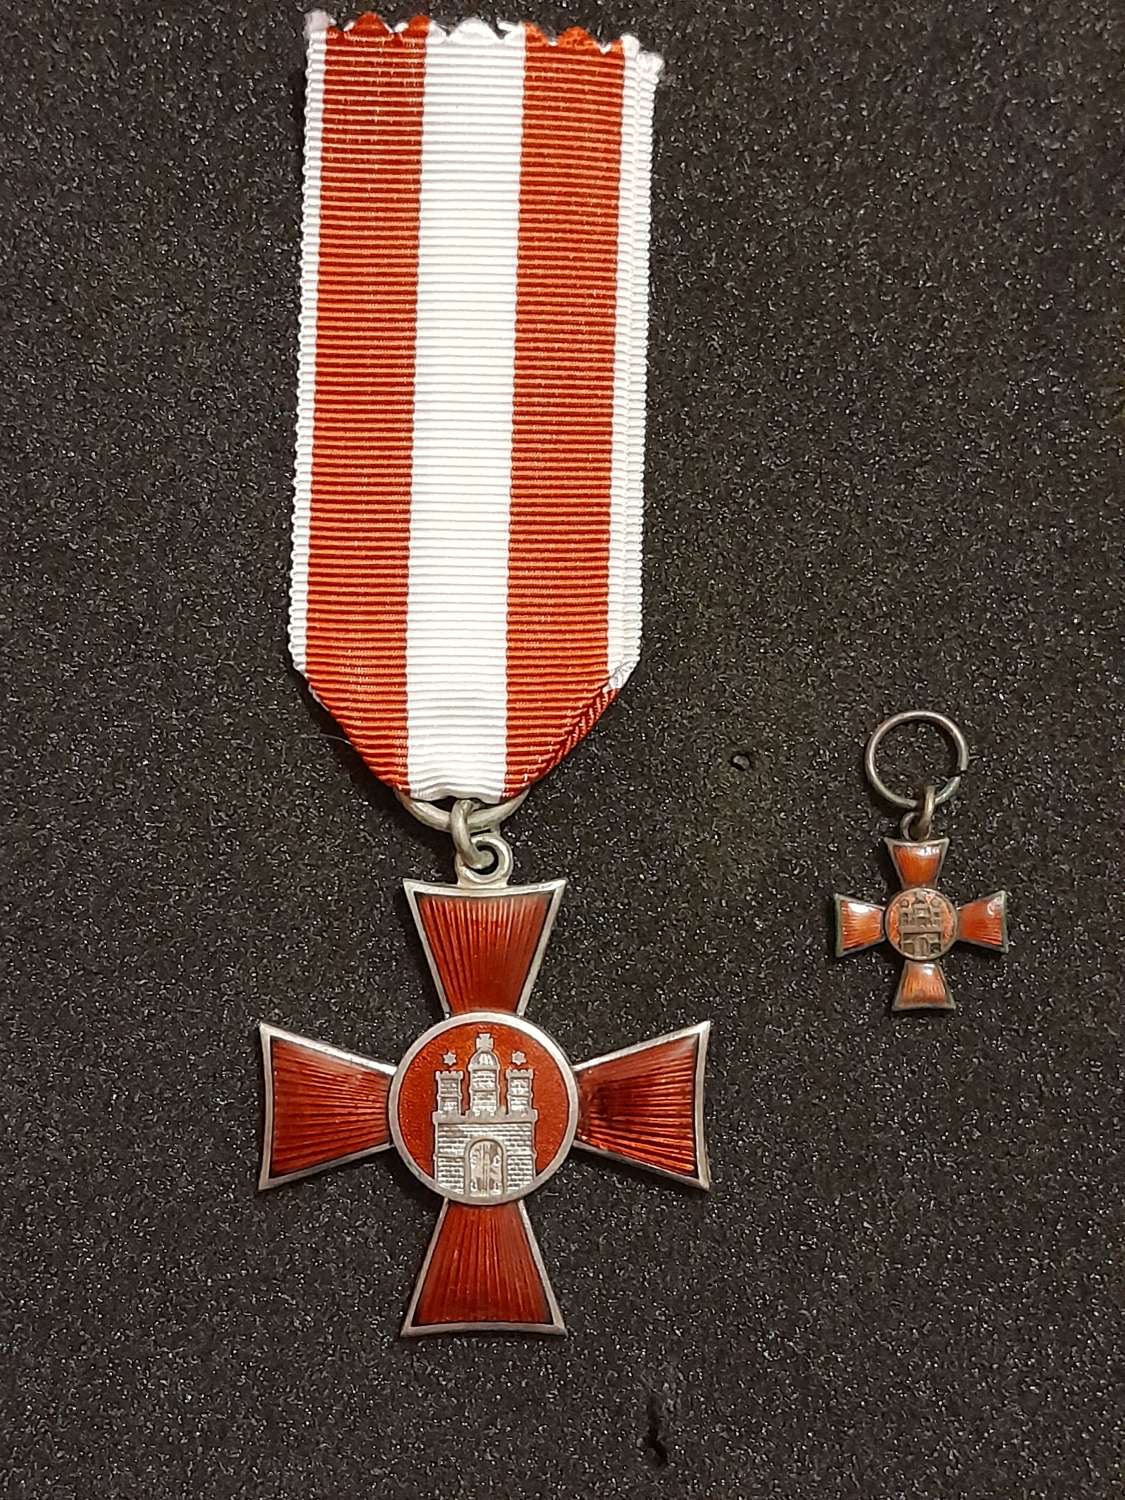 Hamburg Hanseatic Cross with Minature